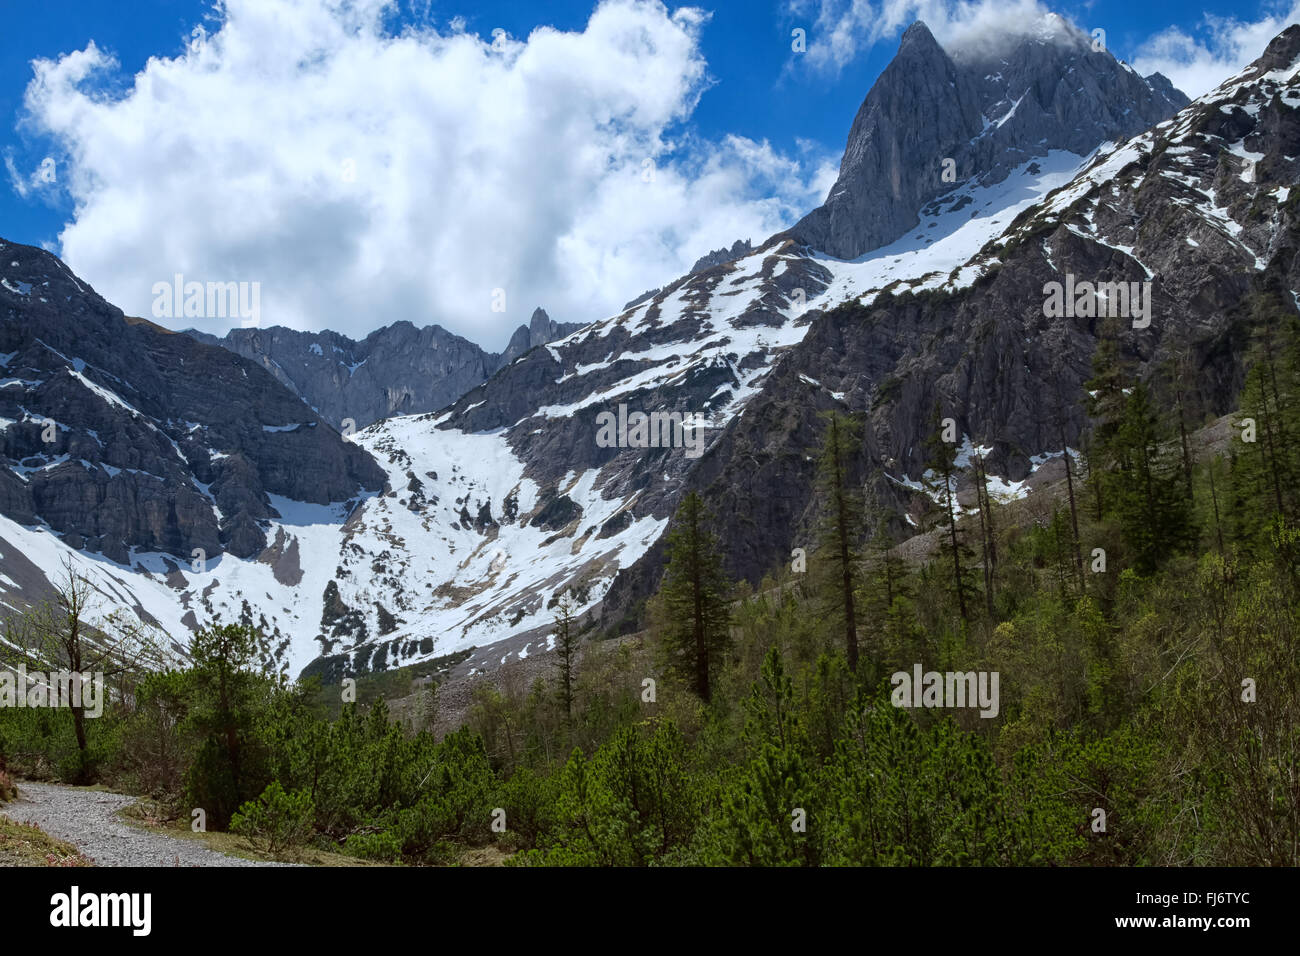 La primavera el paisaje de montaña con verdes bosques y montañas cubiertas de nieve Foto de stock